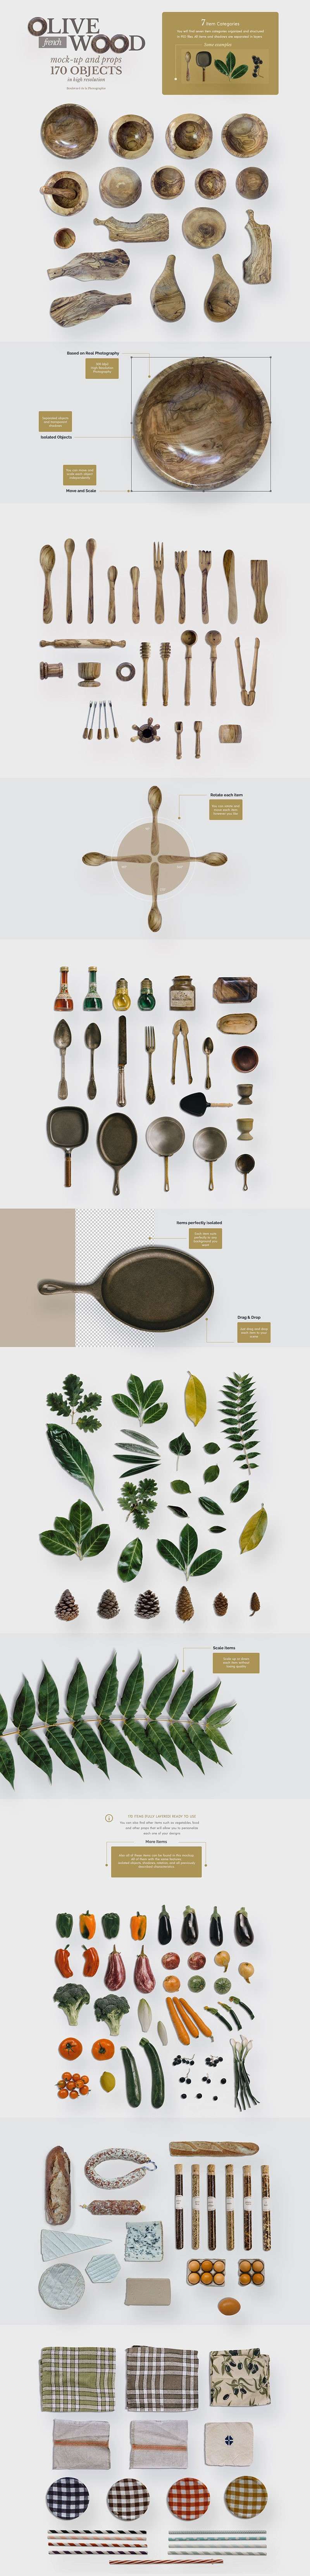 高端木制餐具厨具图片素材PSD格式 图片素材 第2张